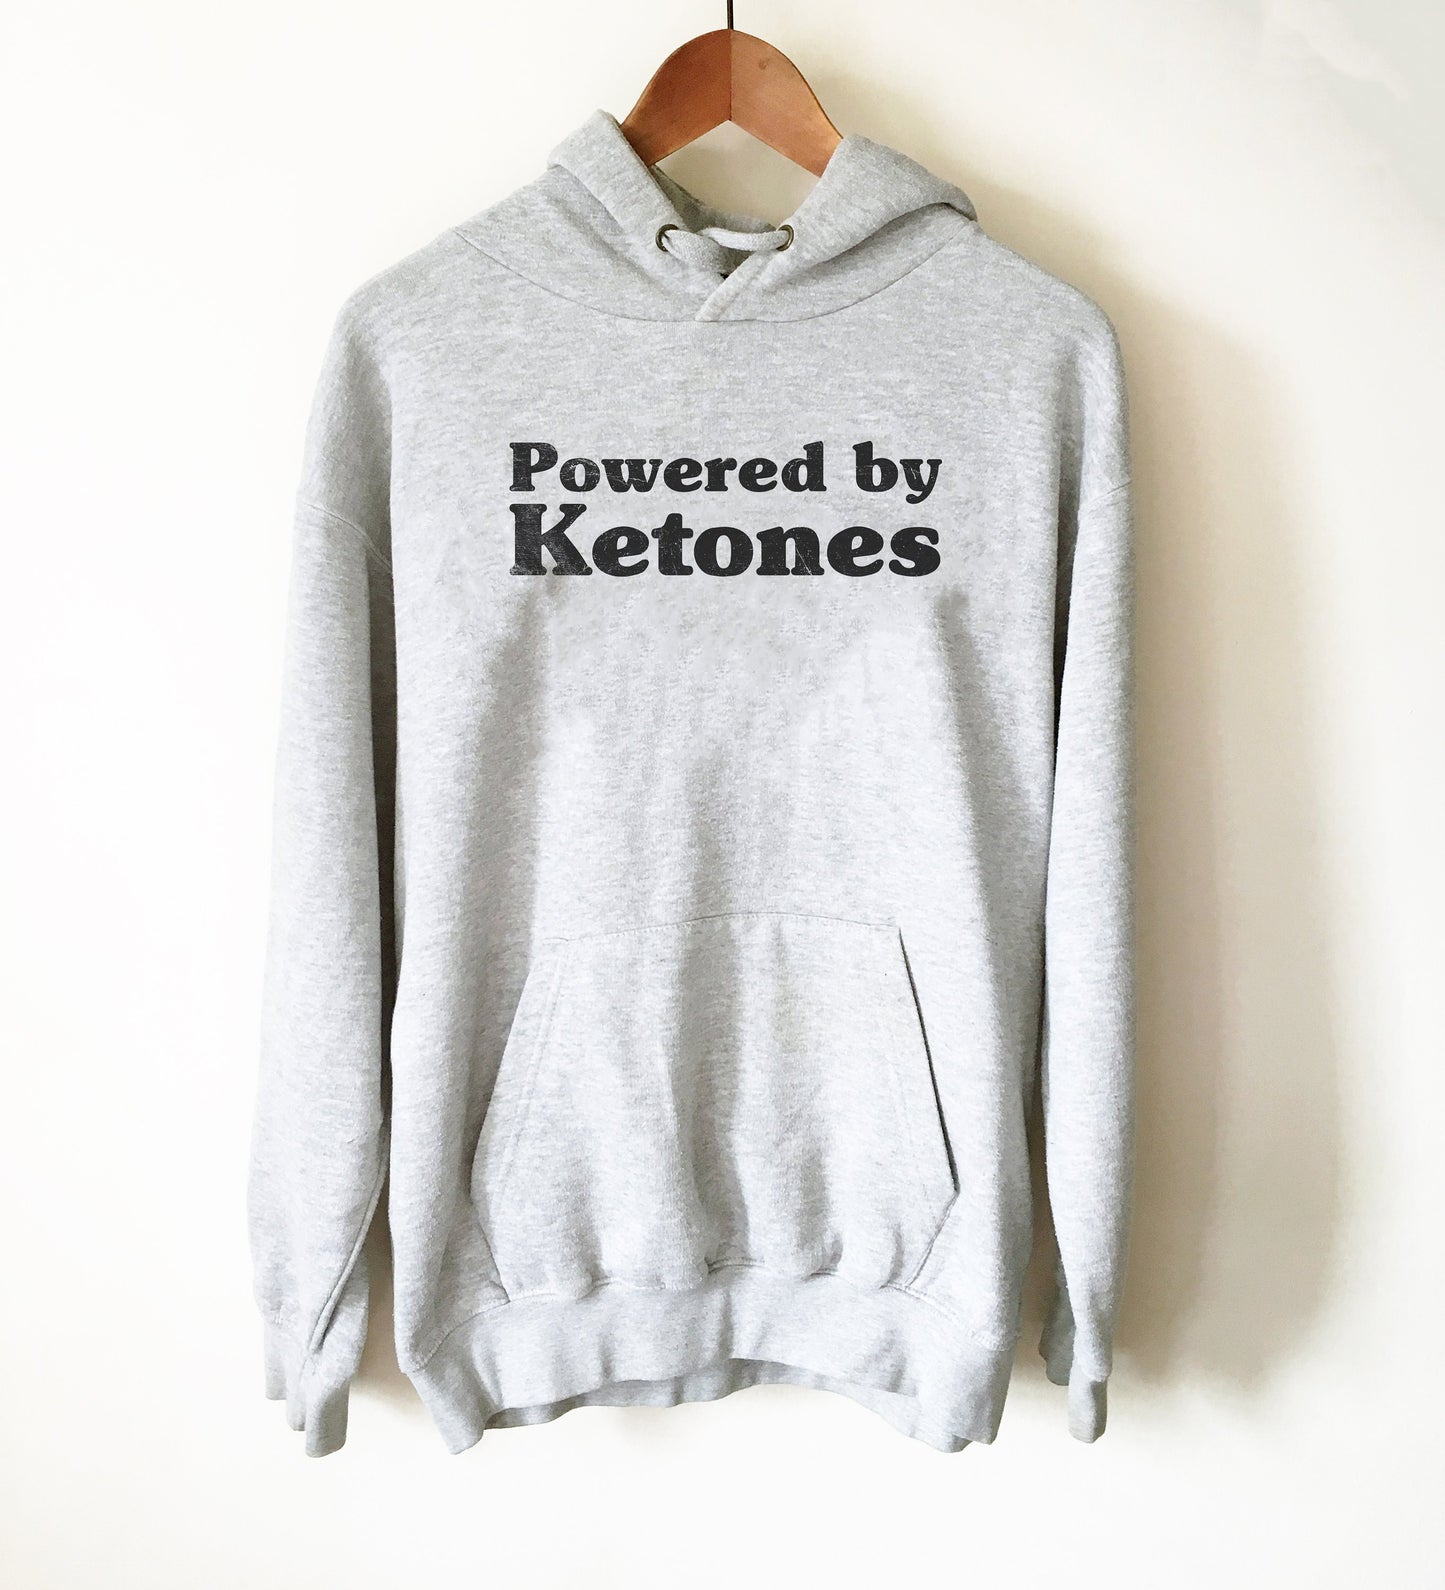 Powered By Ketones Hoodie - Keto T Shirt, Keto, Ketones, Ketogenic Diet, Ketosis, Keto AF, Low Carb, Funny Workout Shirt